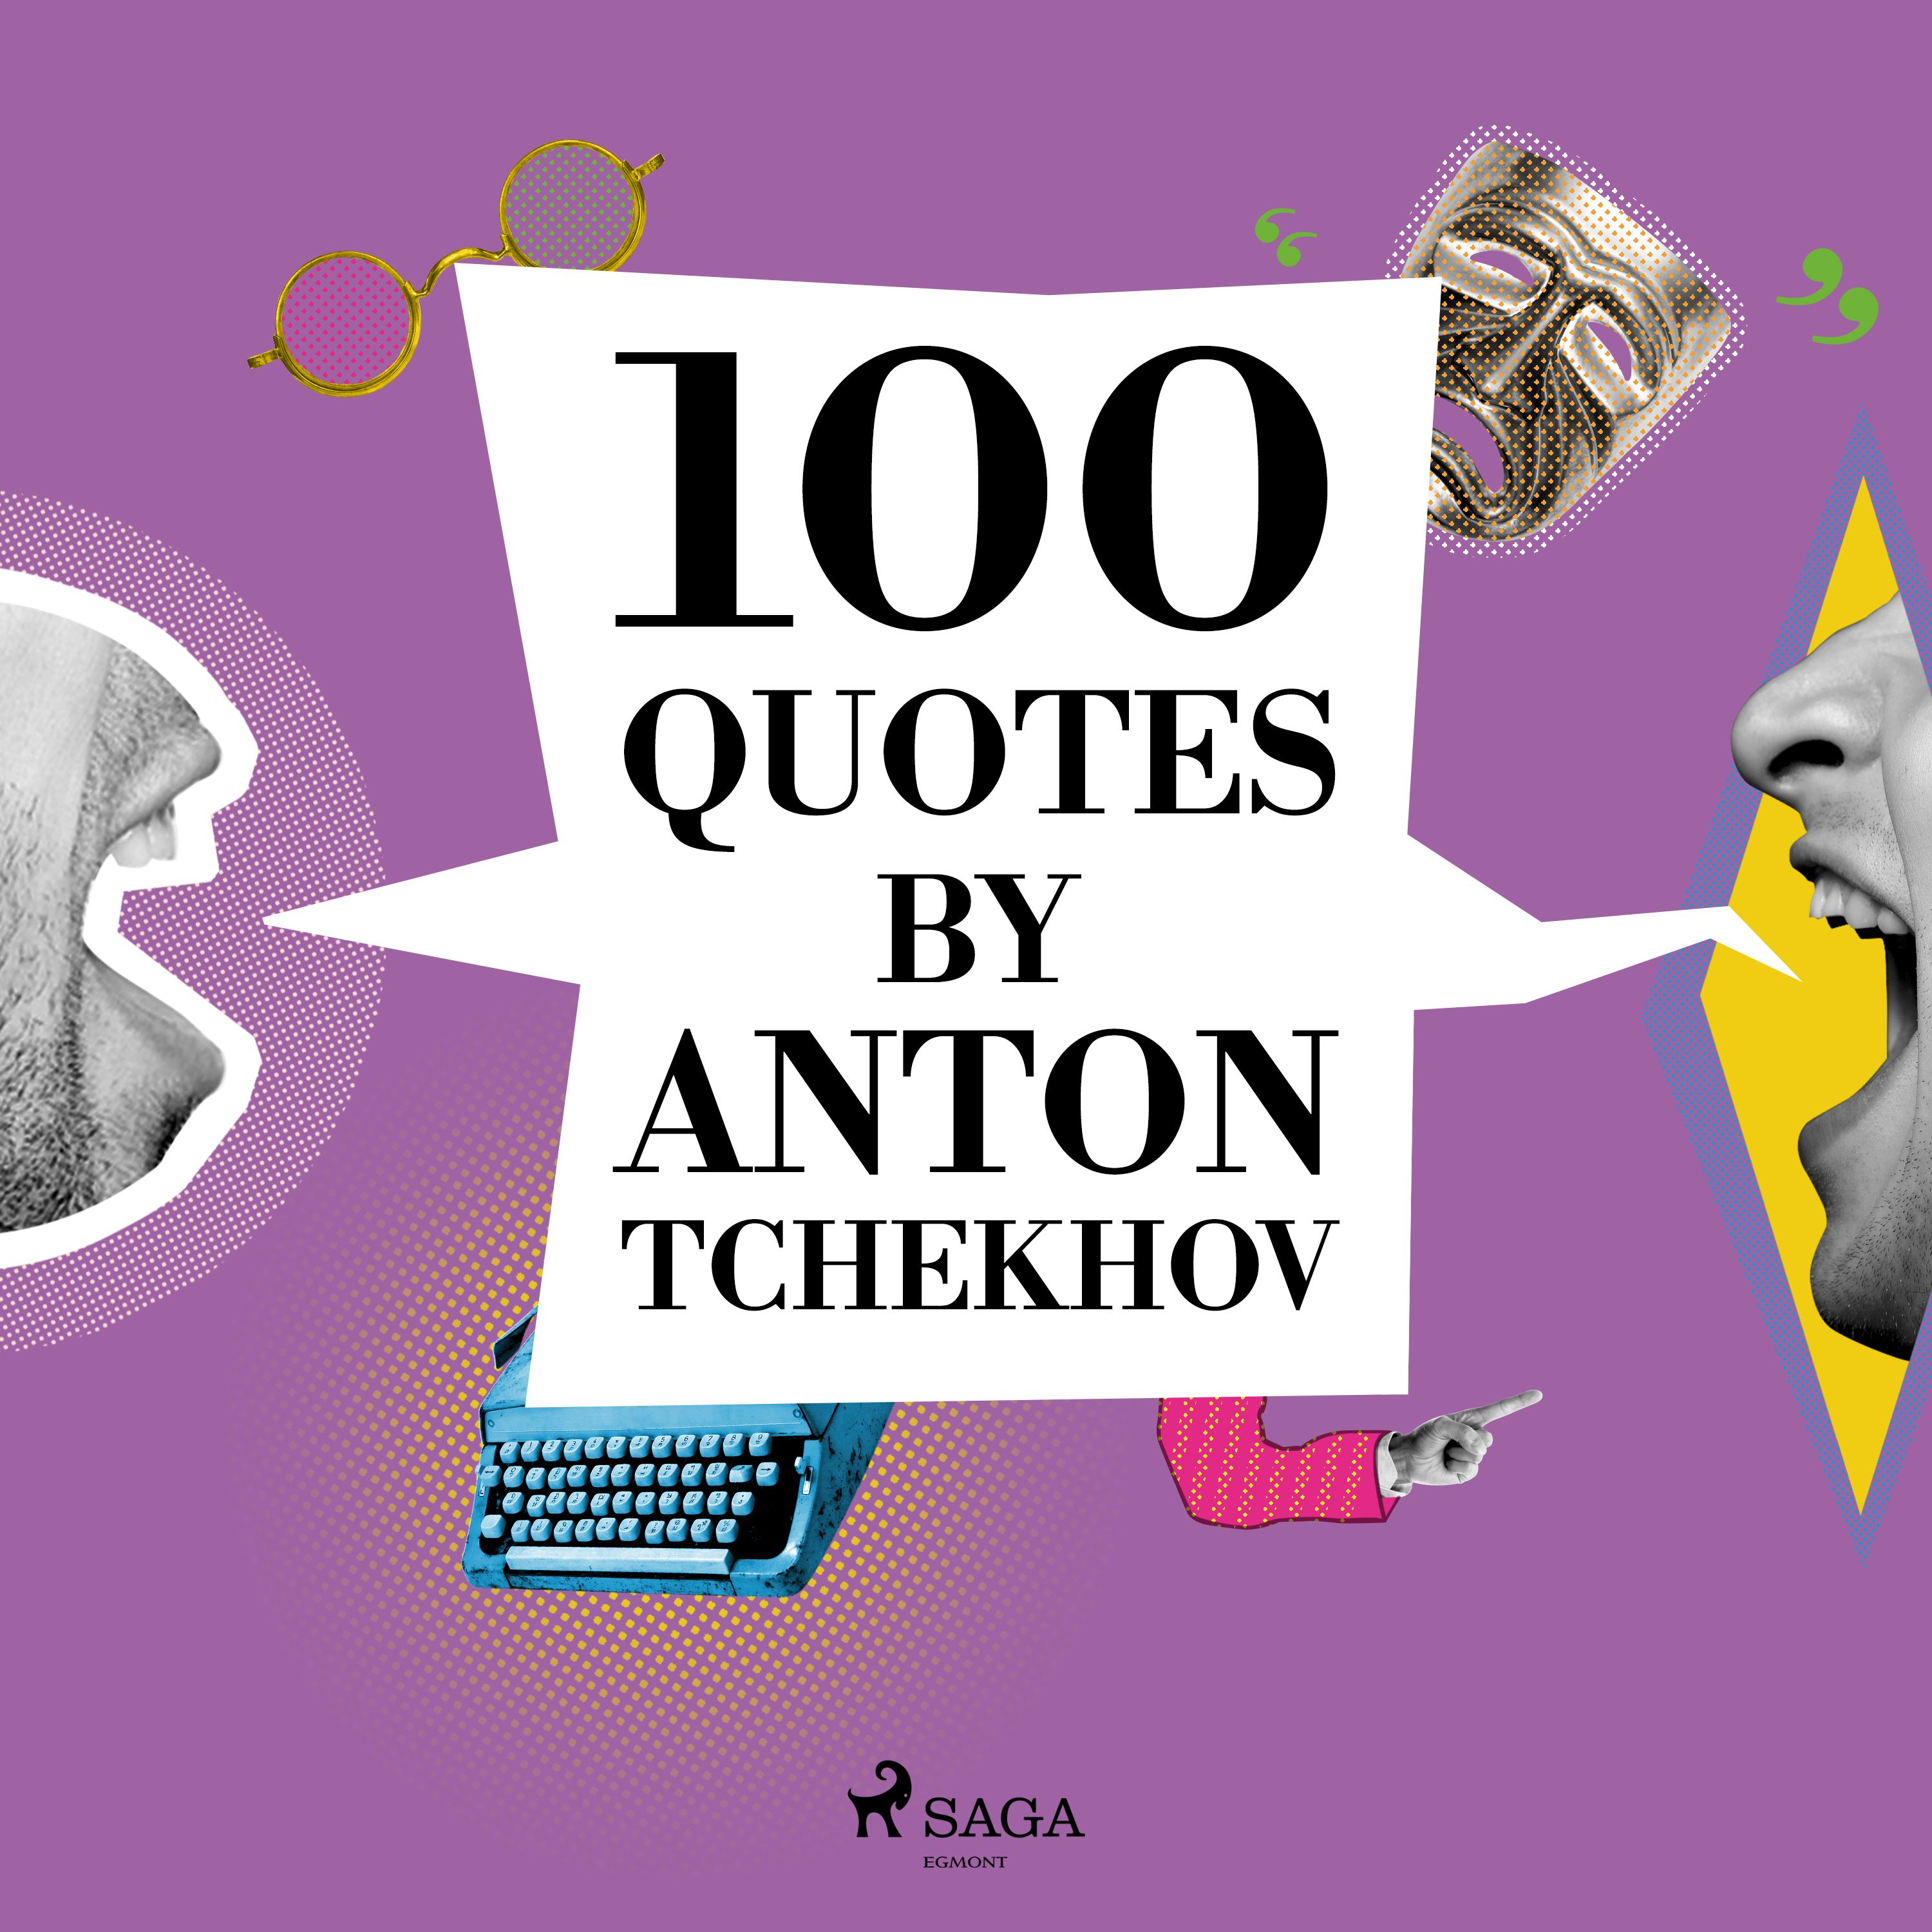 100 Quotes by Anton Tchekhov, audiobook by Anton Chekhov